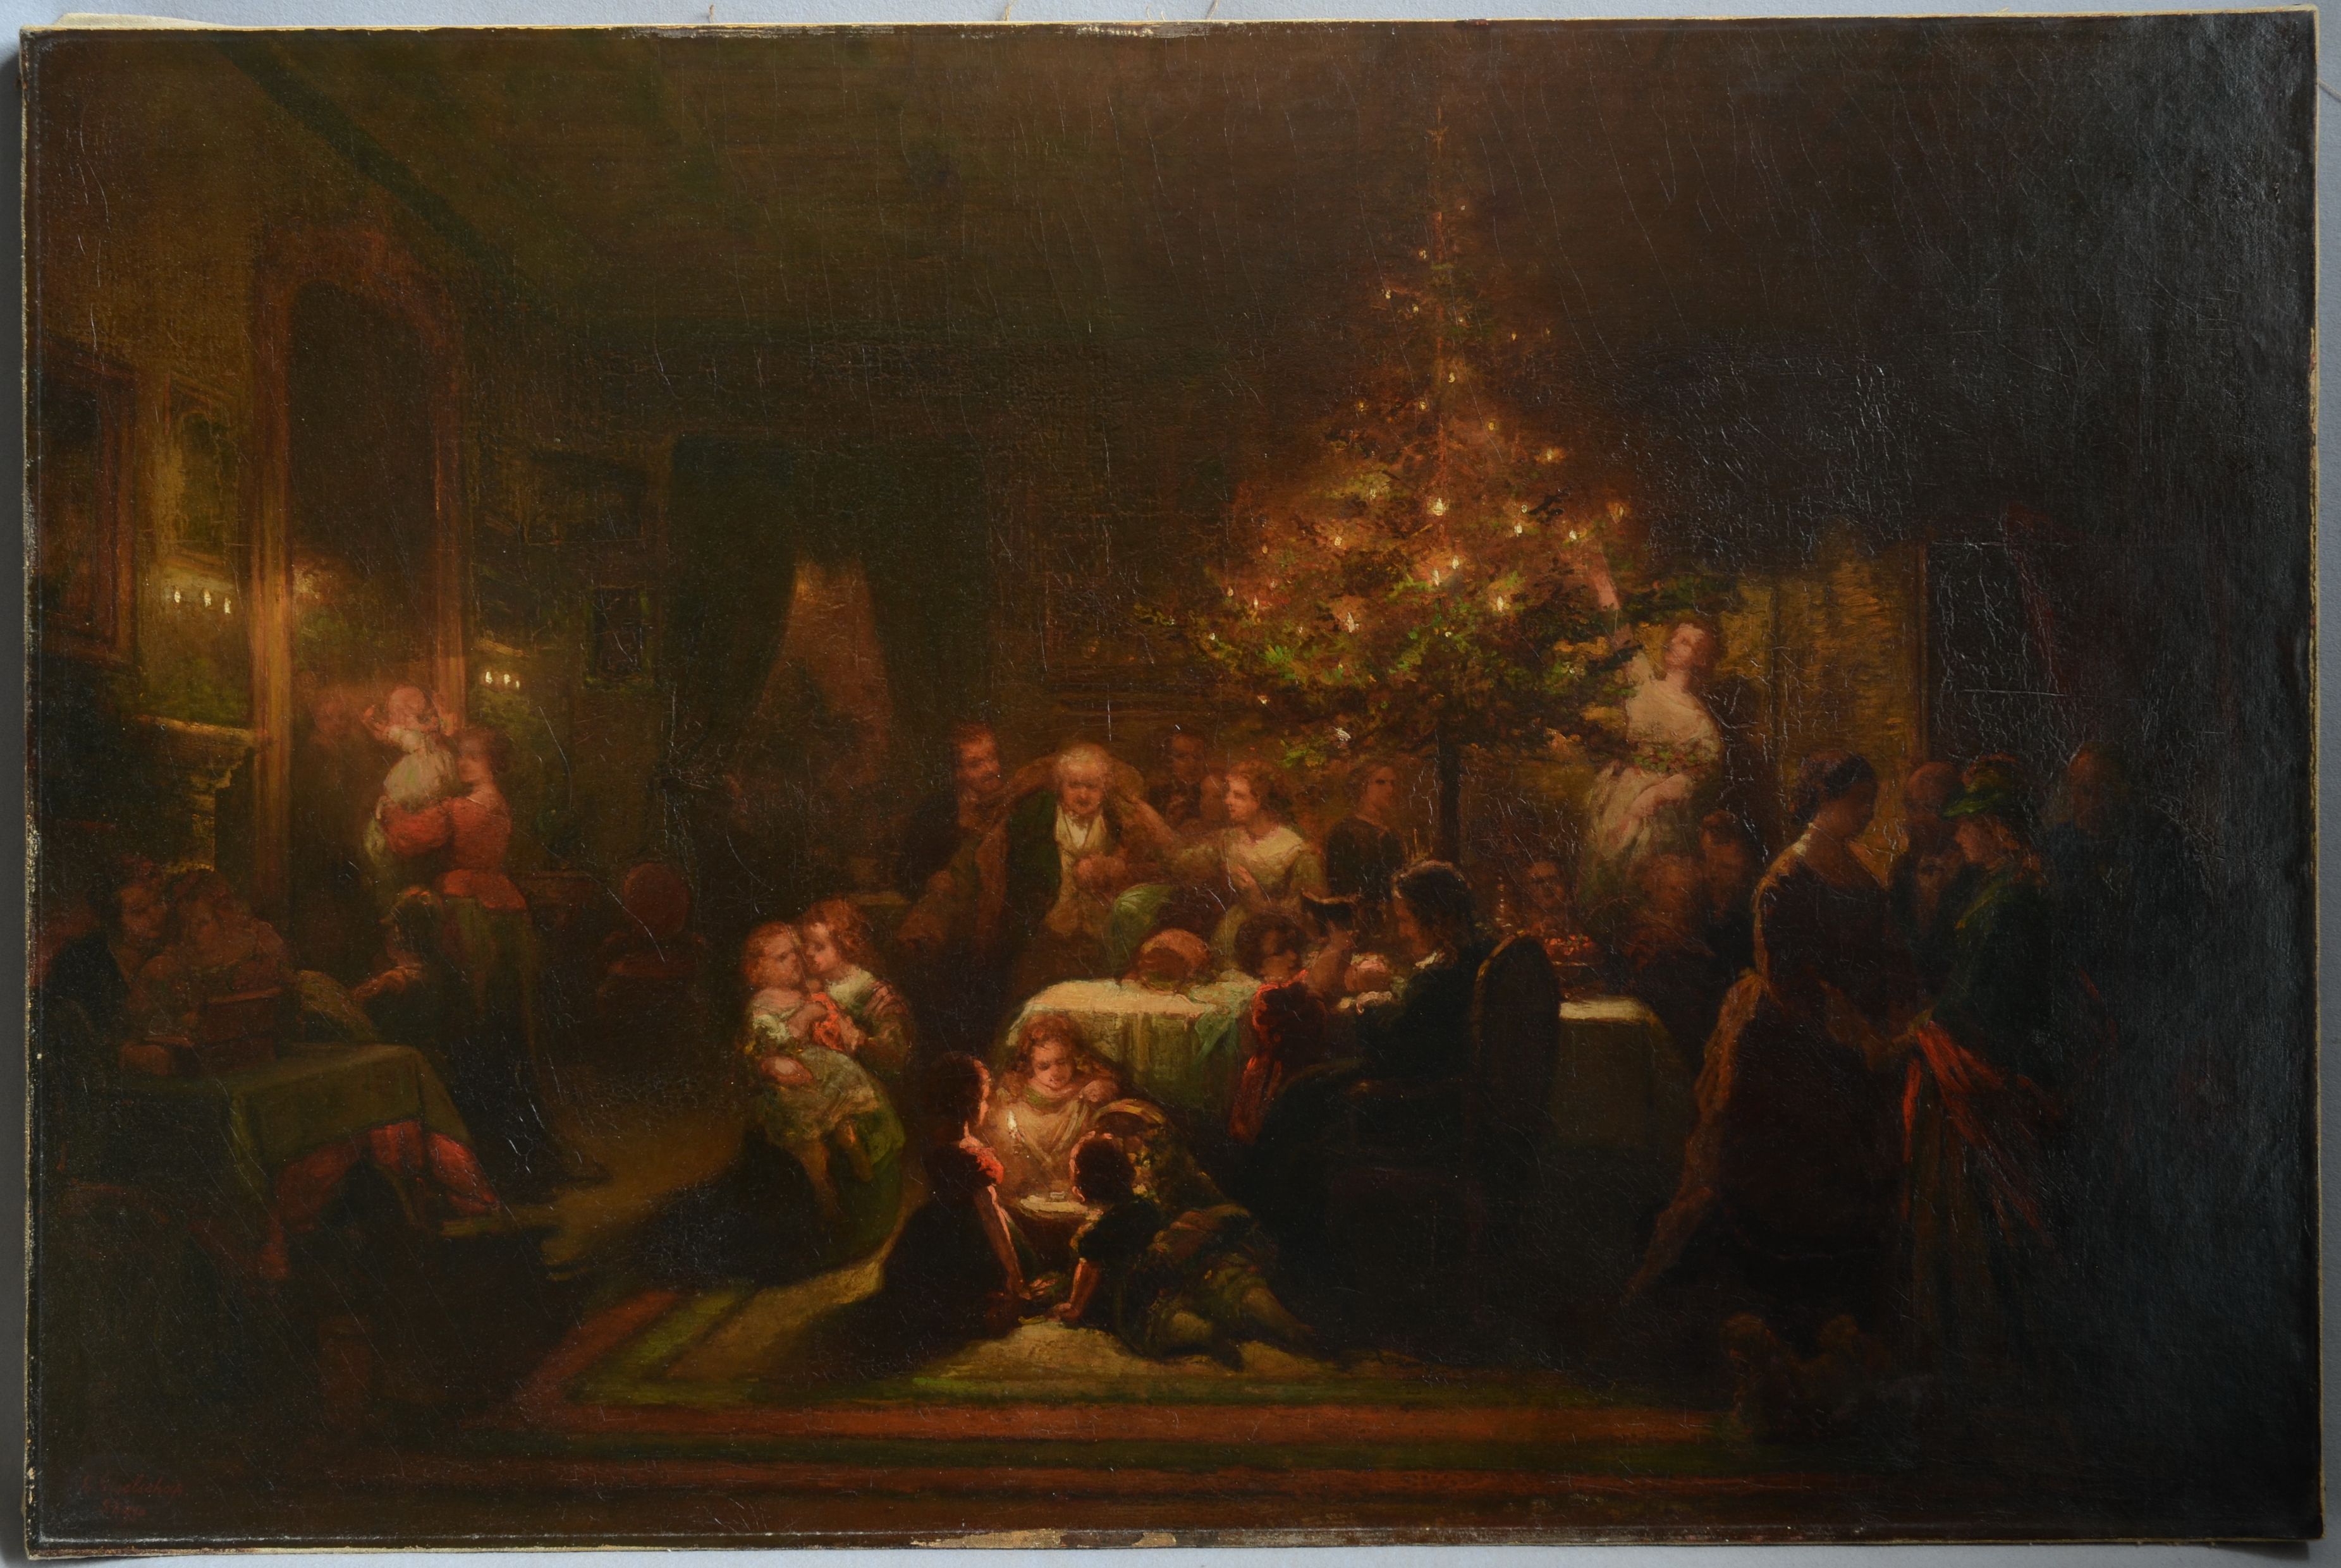 Gemälde: Eduard Geselschap, Weihnachtsfest, 1855/1860